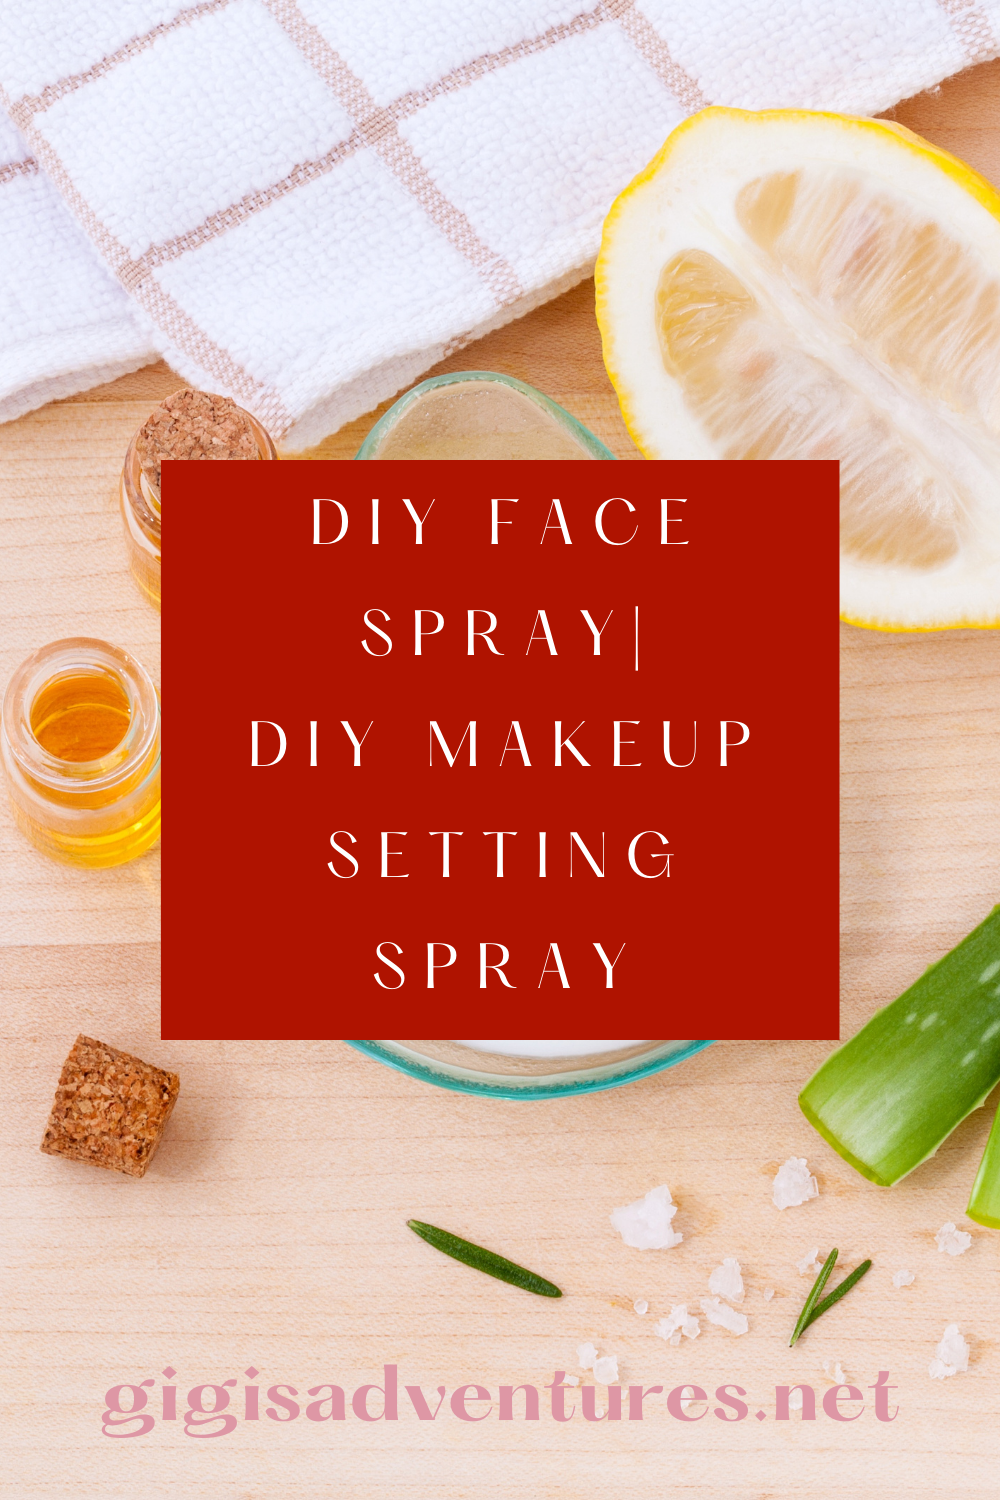 DIY Face Spray | DIY Makeup Setting Spray, DIY Facial Spray